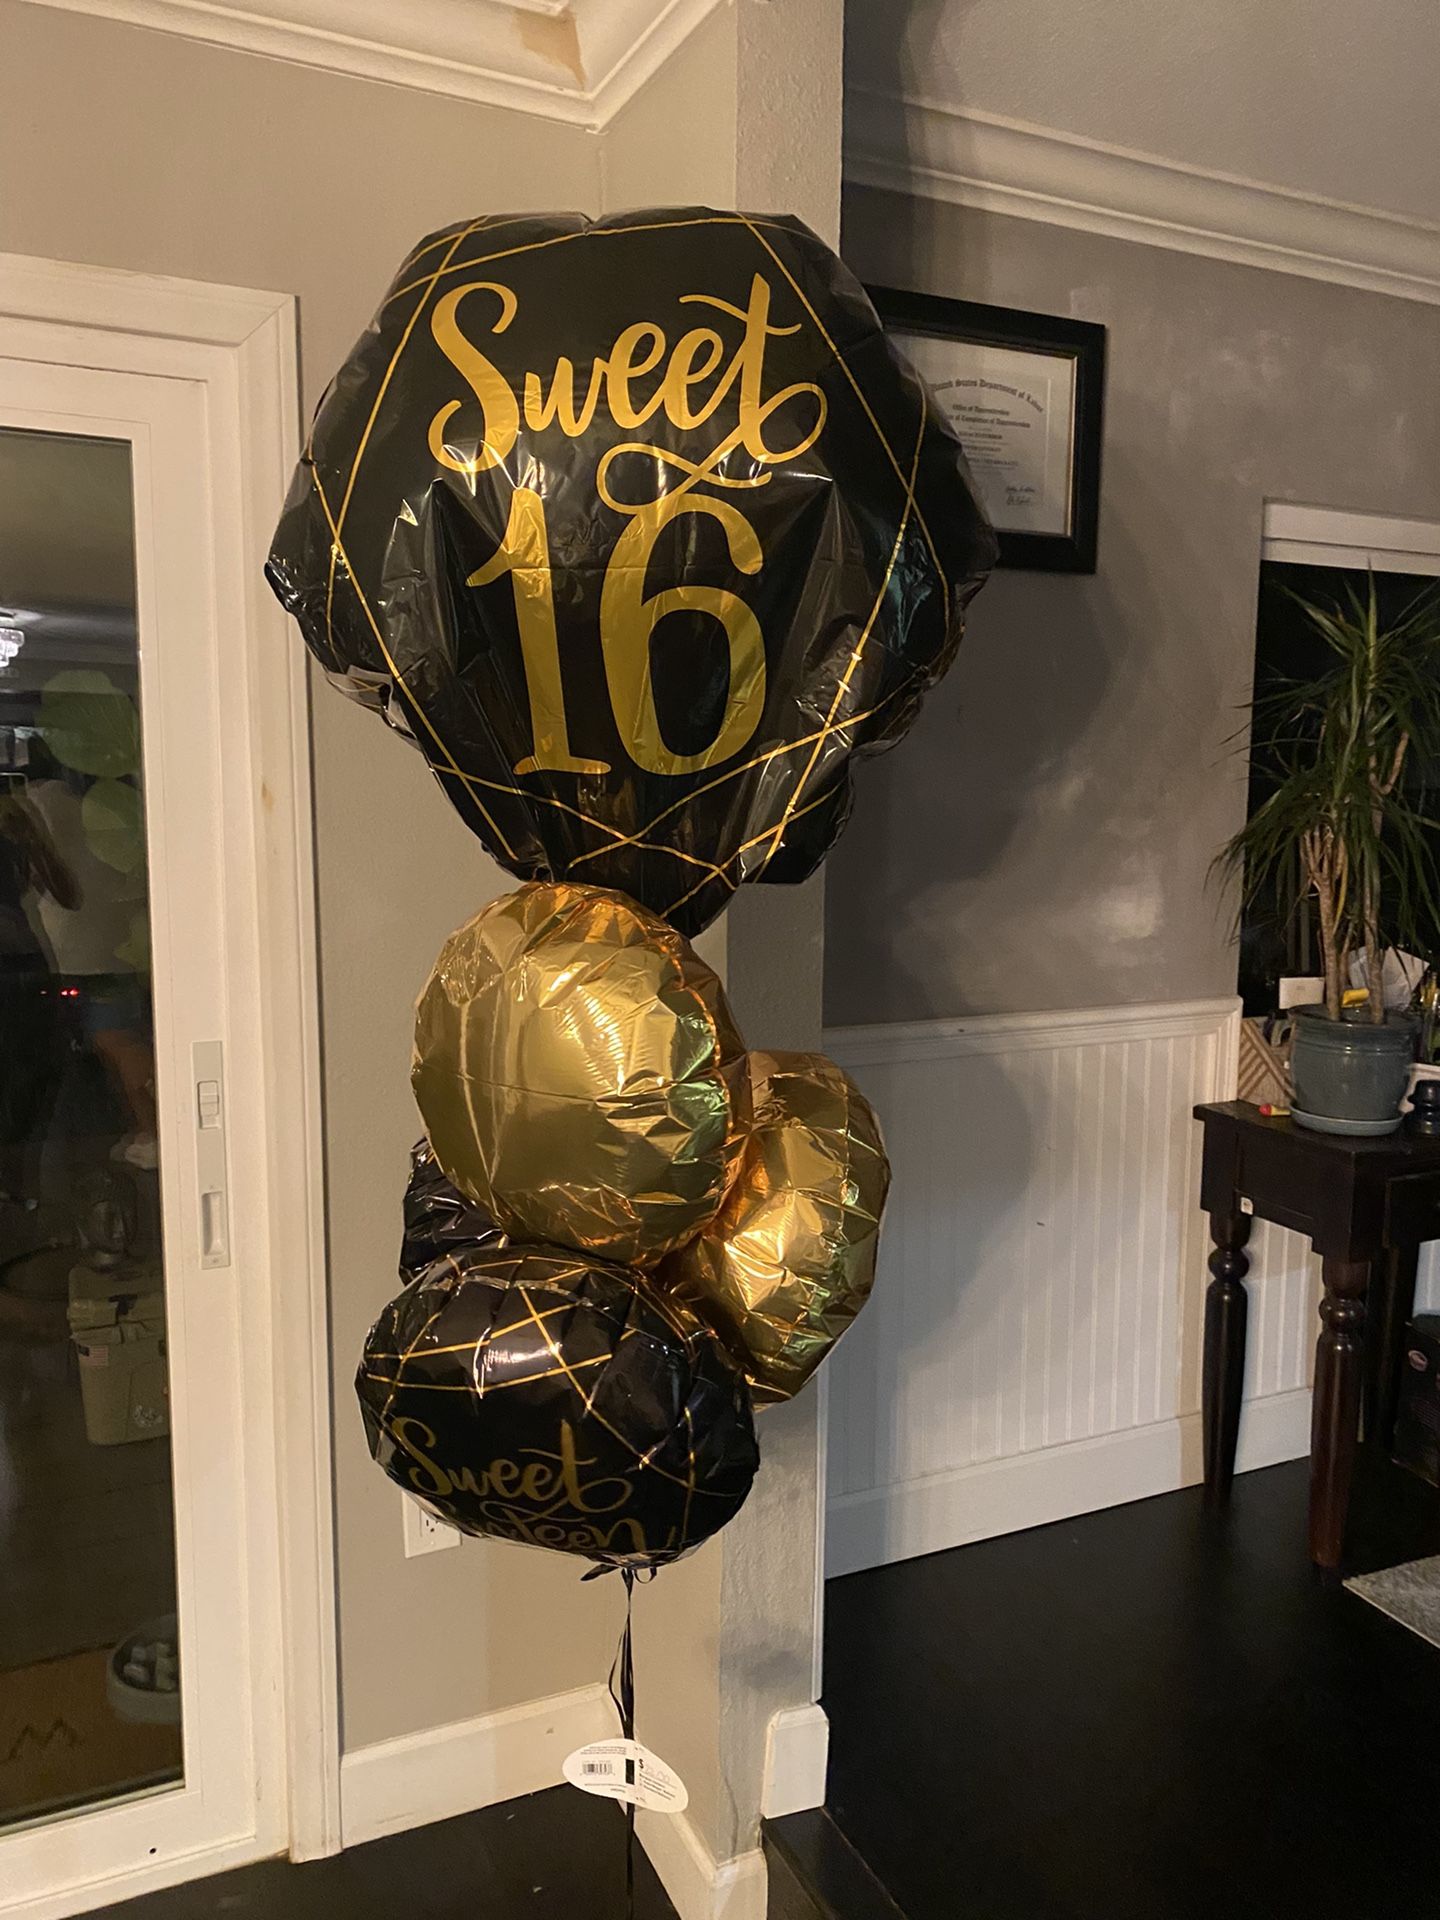 FREE Sweet 16 balloons  